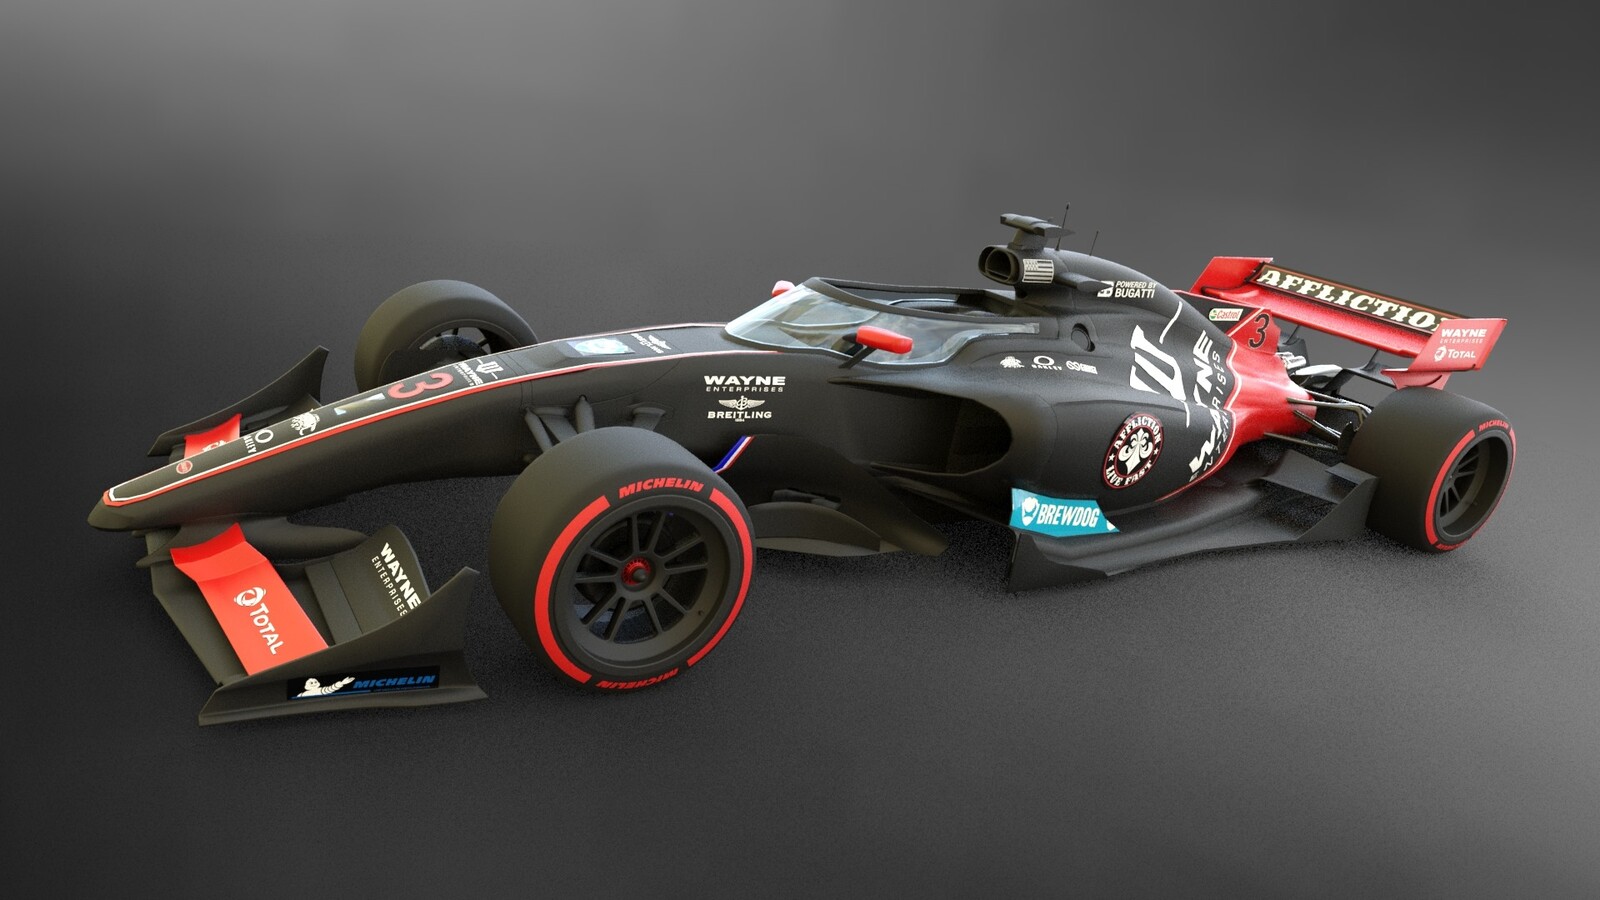 Hugues Vacher - F1 - 2021 Concept